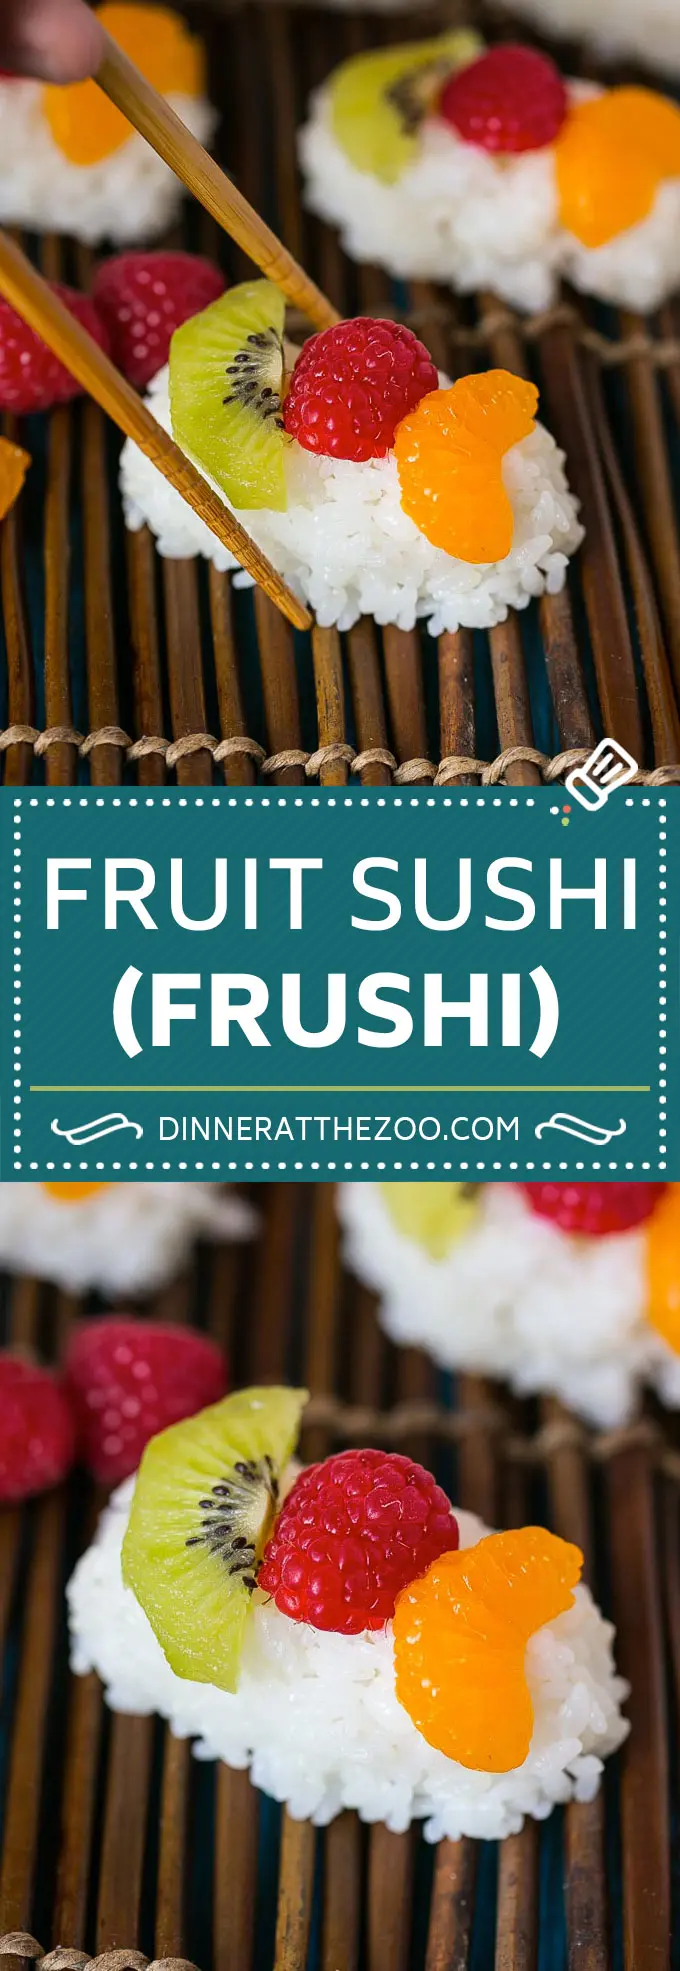 Frugt sushi opskrift | Dessert Sushi #frugt #sushi #snack #dessert #dinneratthezoo